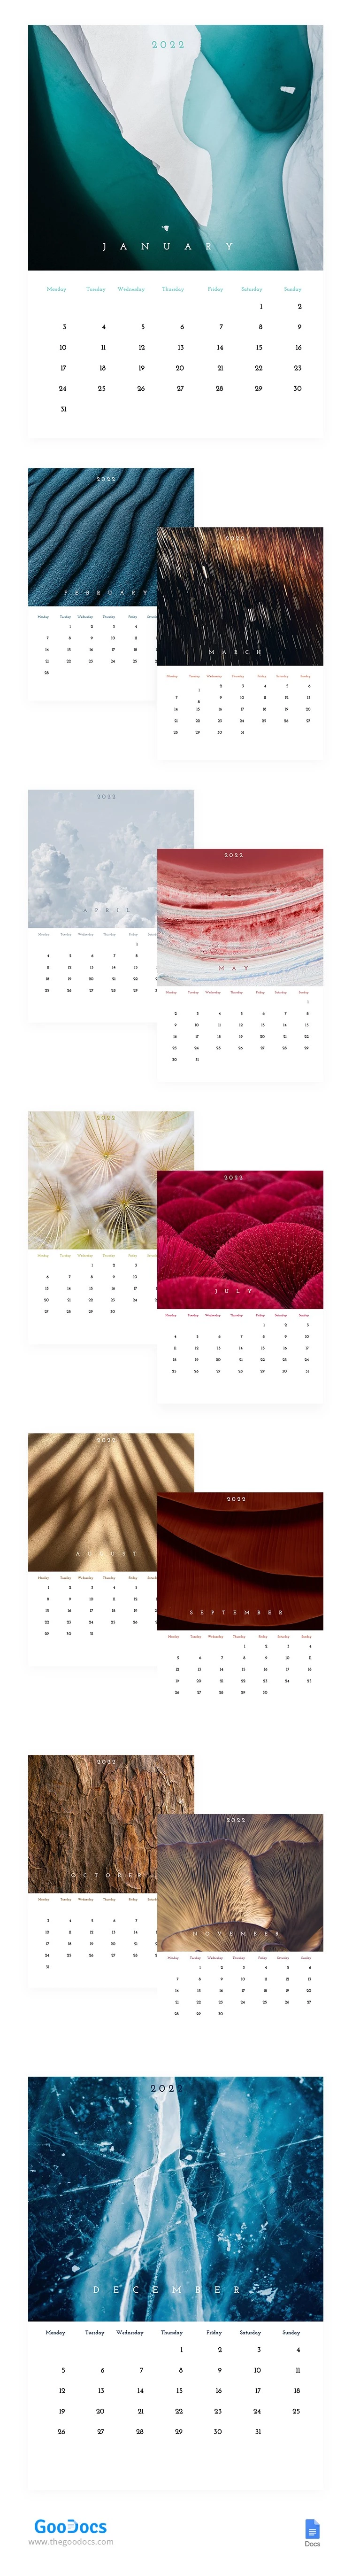 Nature Texture Calendar - free Google Docs Template - 10062278